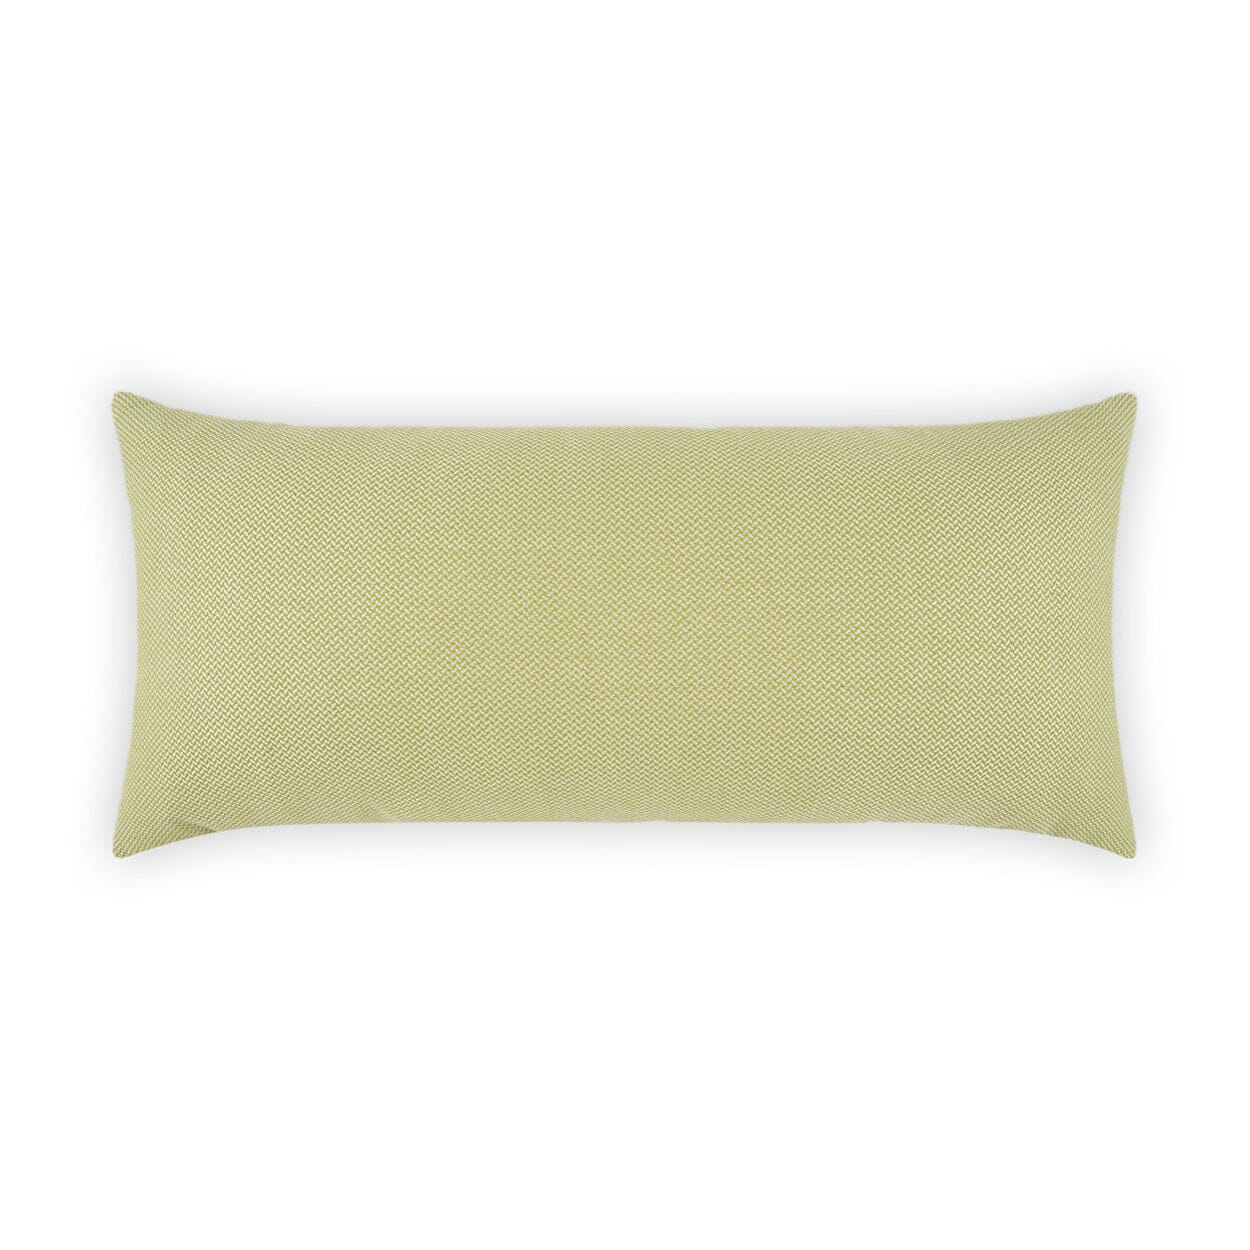 D.V. Kap 12" x 24" Outdoor Lumbar Pillow | Pyke Green Lumbar Pillows D.V Kap Outdoor